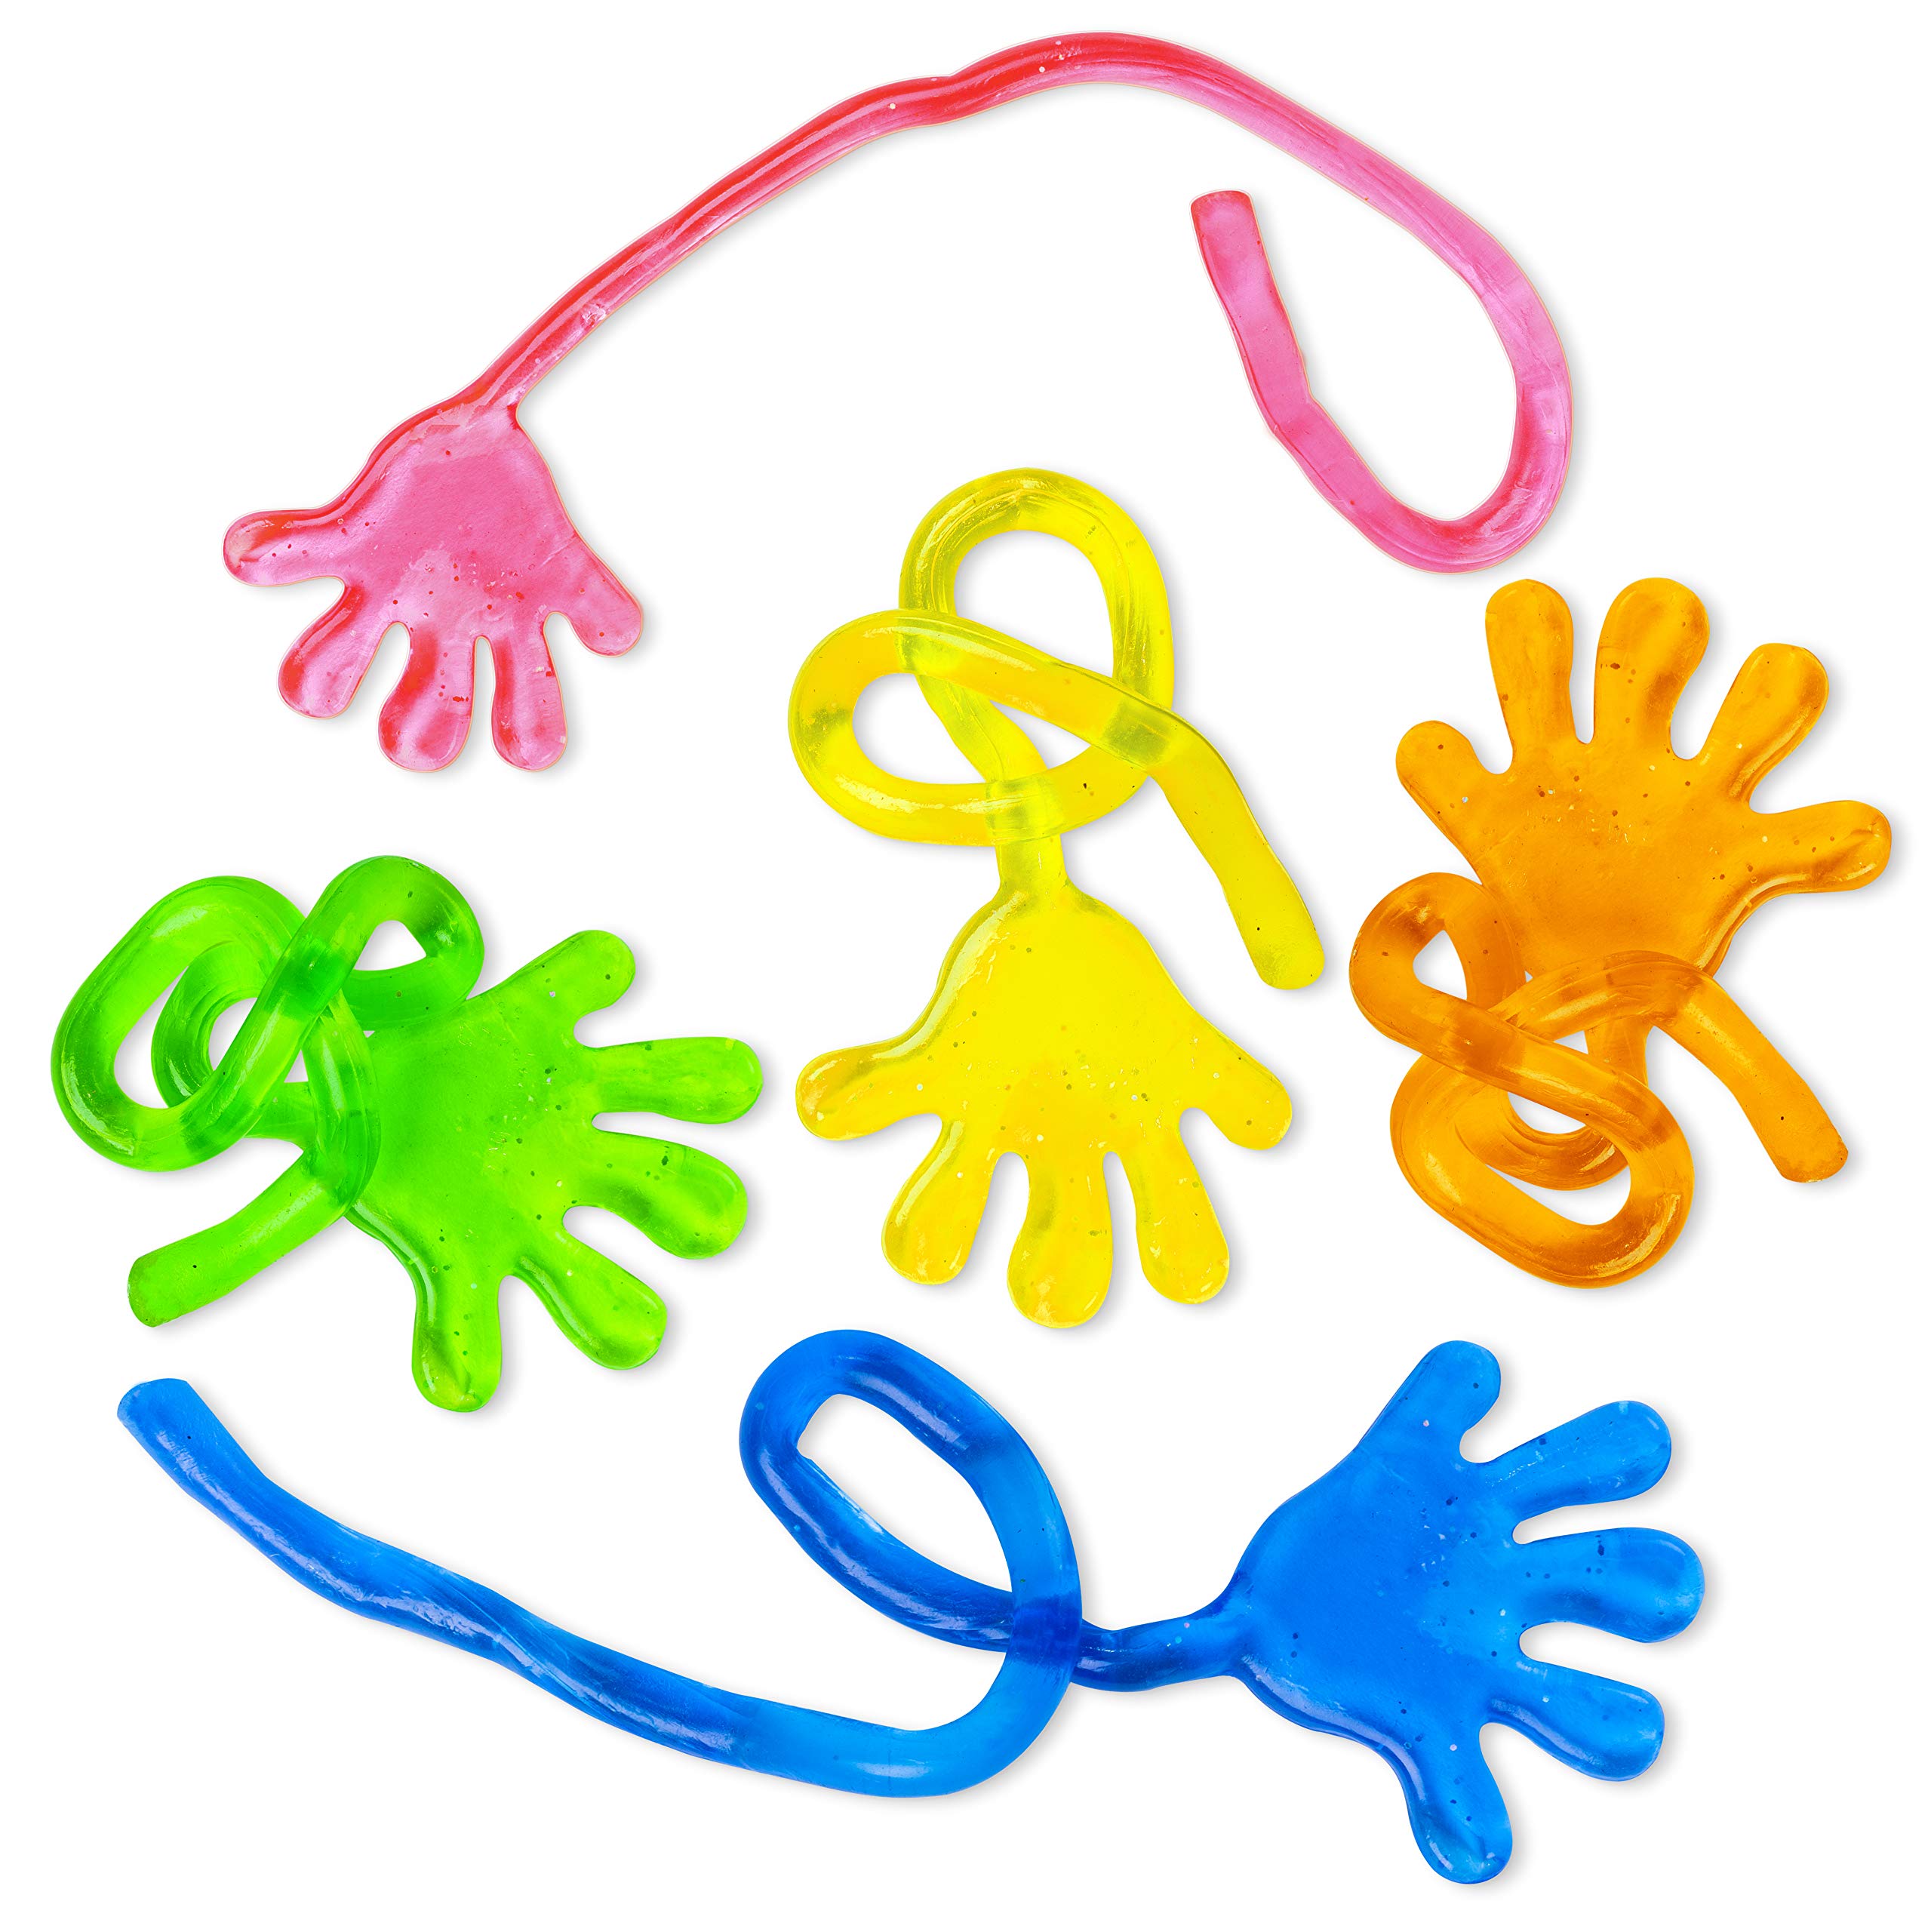 Vinyl Glitter Mini Sticky Hands Toys for Children Party Favors, Birthdays - 1 1/4